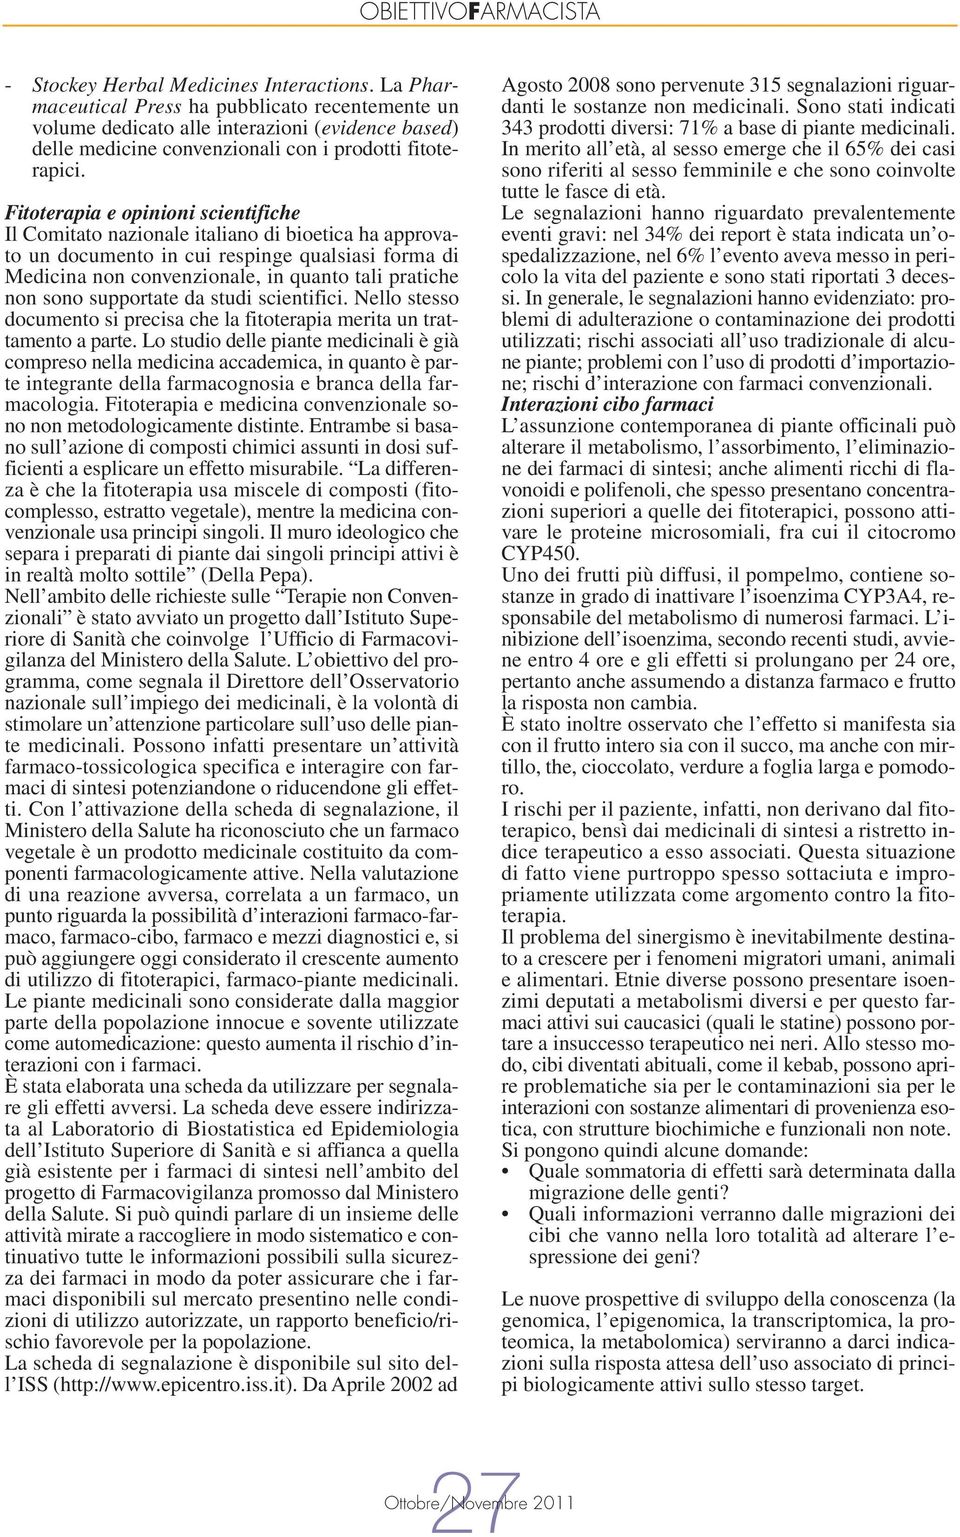 Fitoterapia e opinioni scientifiche Il Comitato nazionale italiano di bioetica ha approvato un documento in cui respinge qualsiasi forma di Medicina non convenzionale, in quanto tali pratiche non